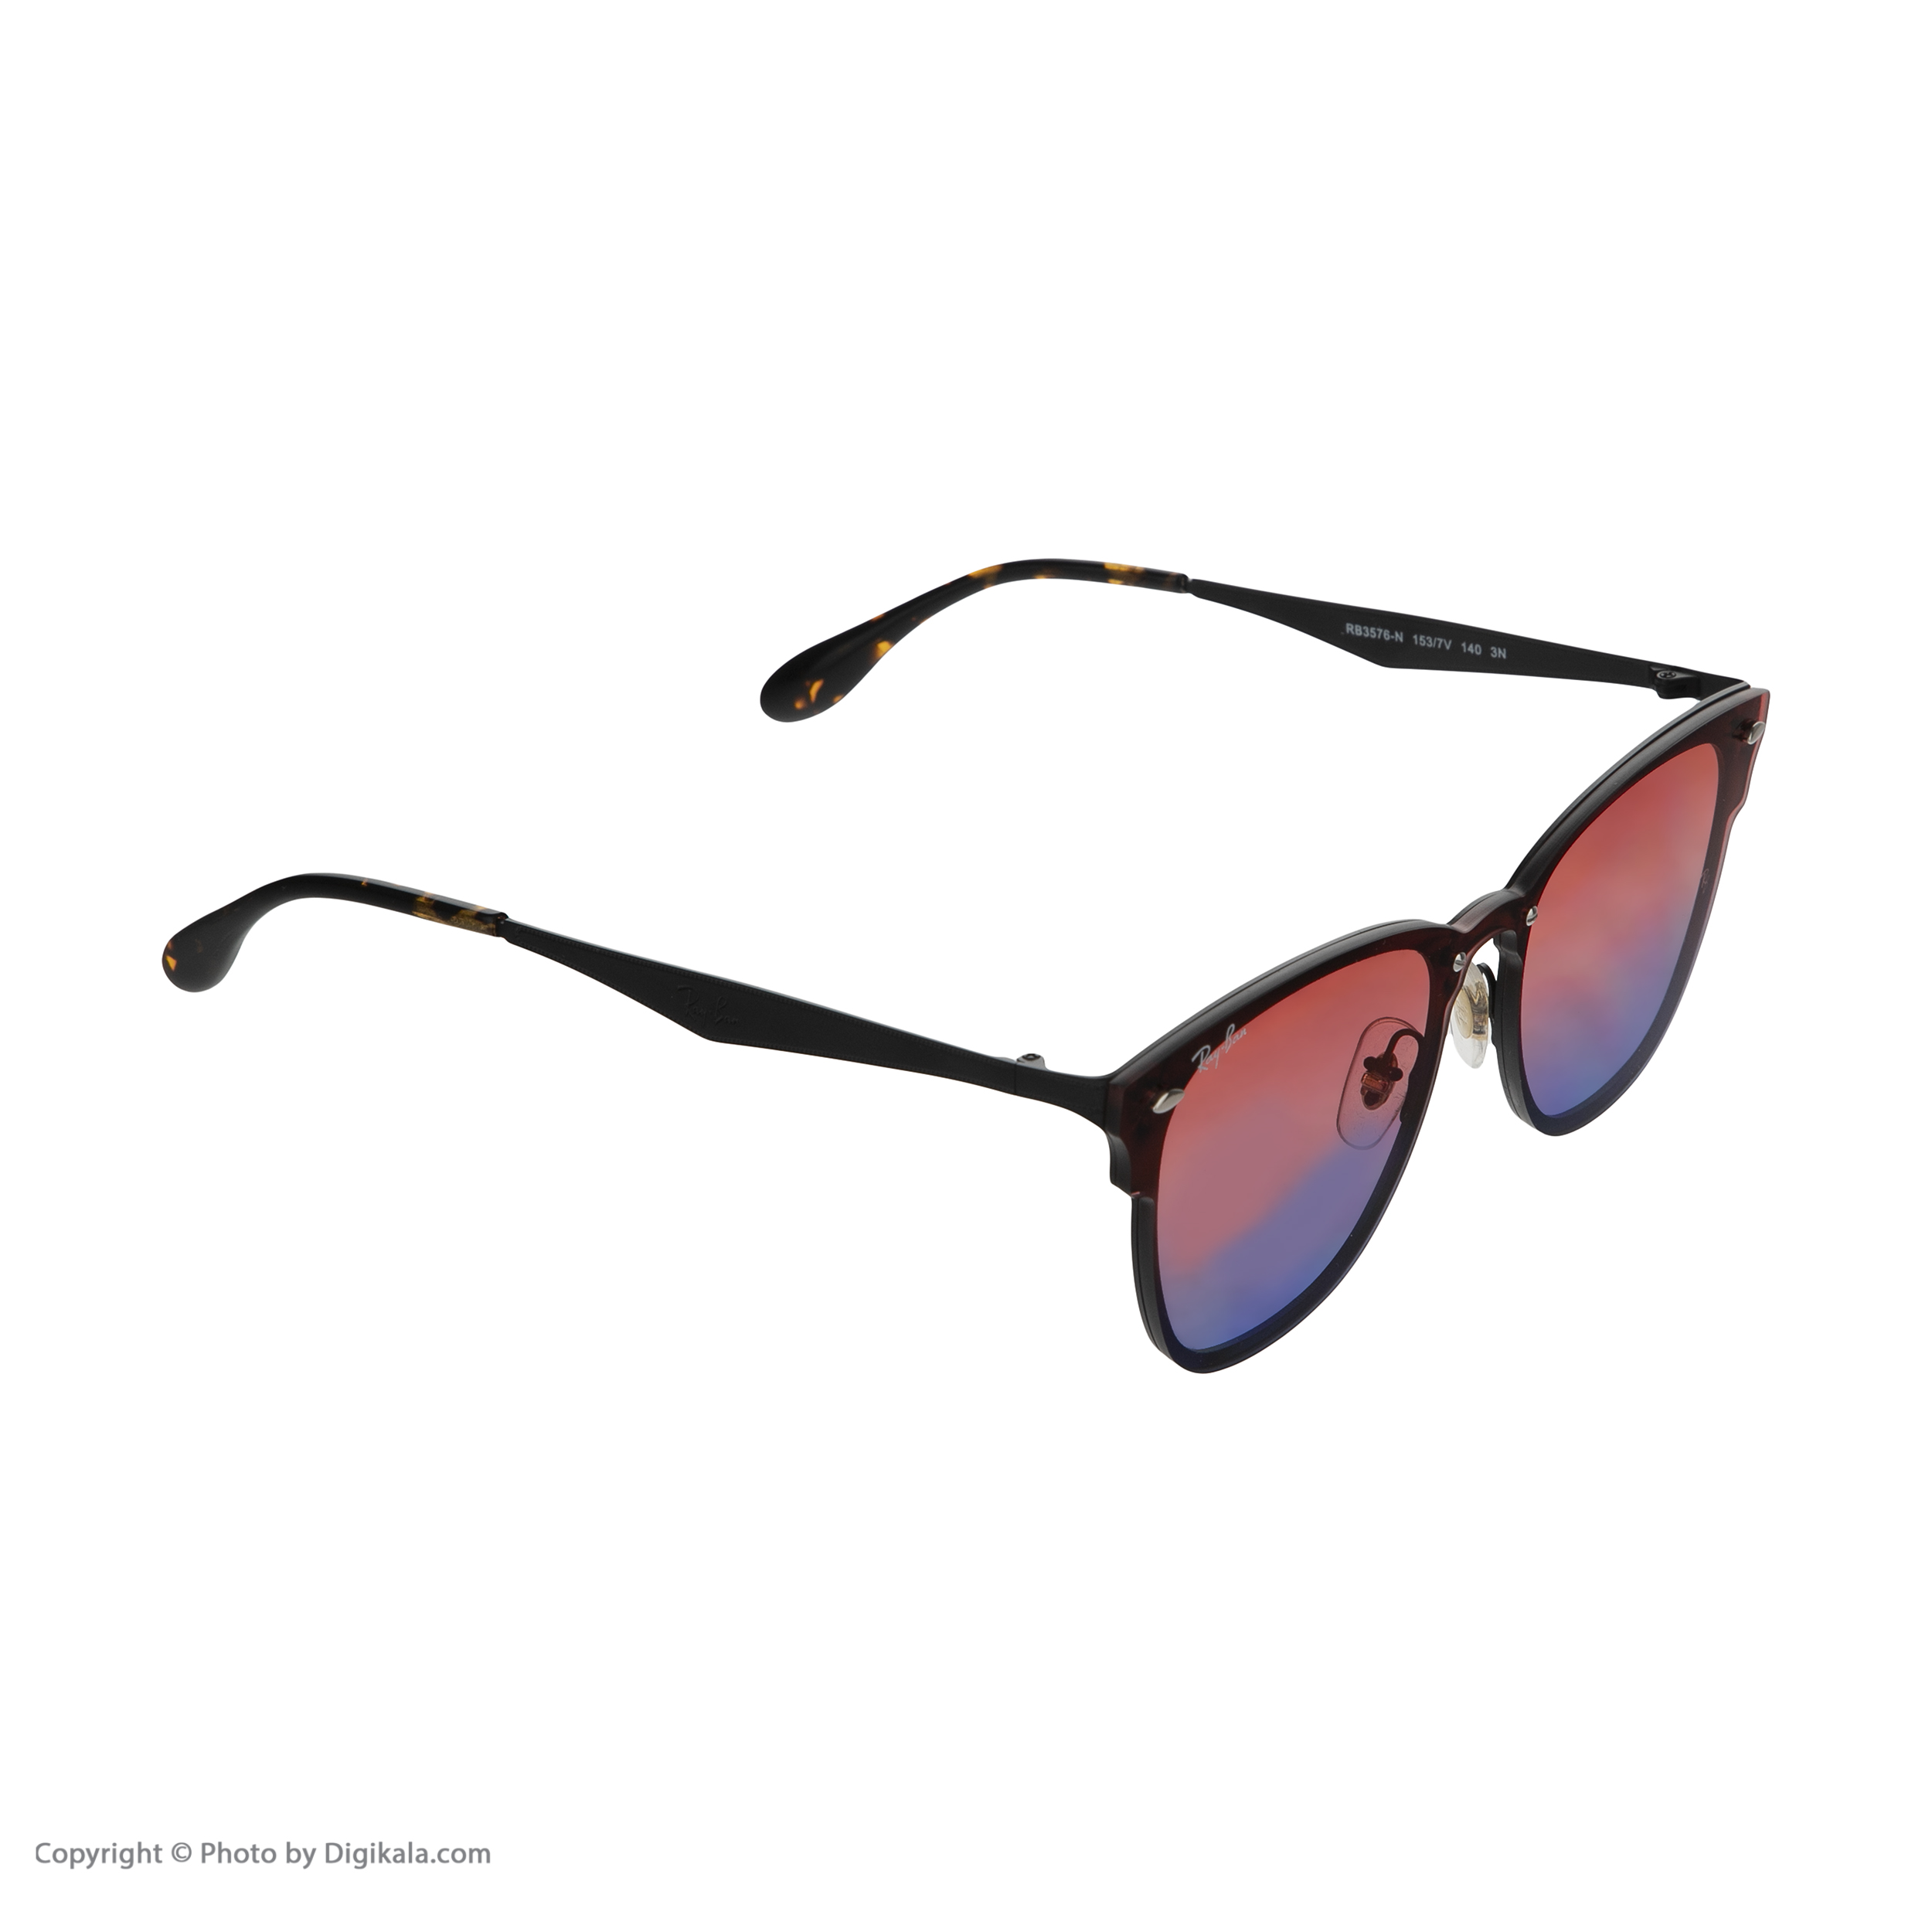 عینک آفتابی ری بن مدل 3576-153/7v - مشکی آبی - 3